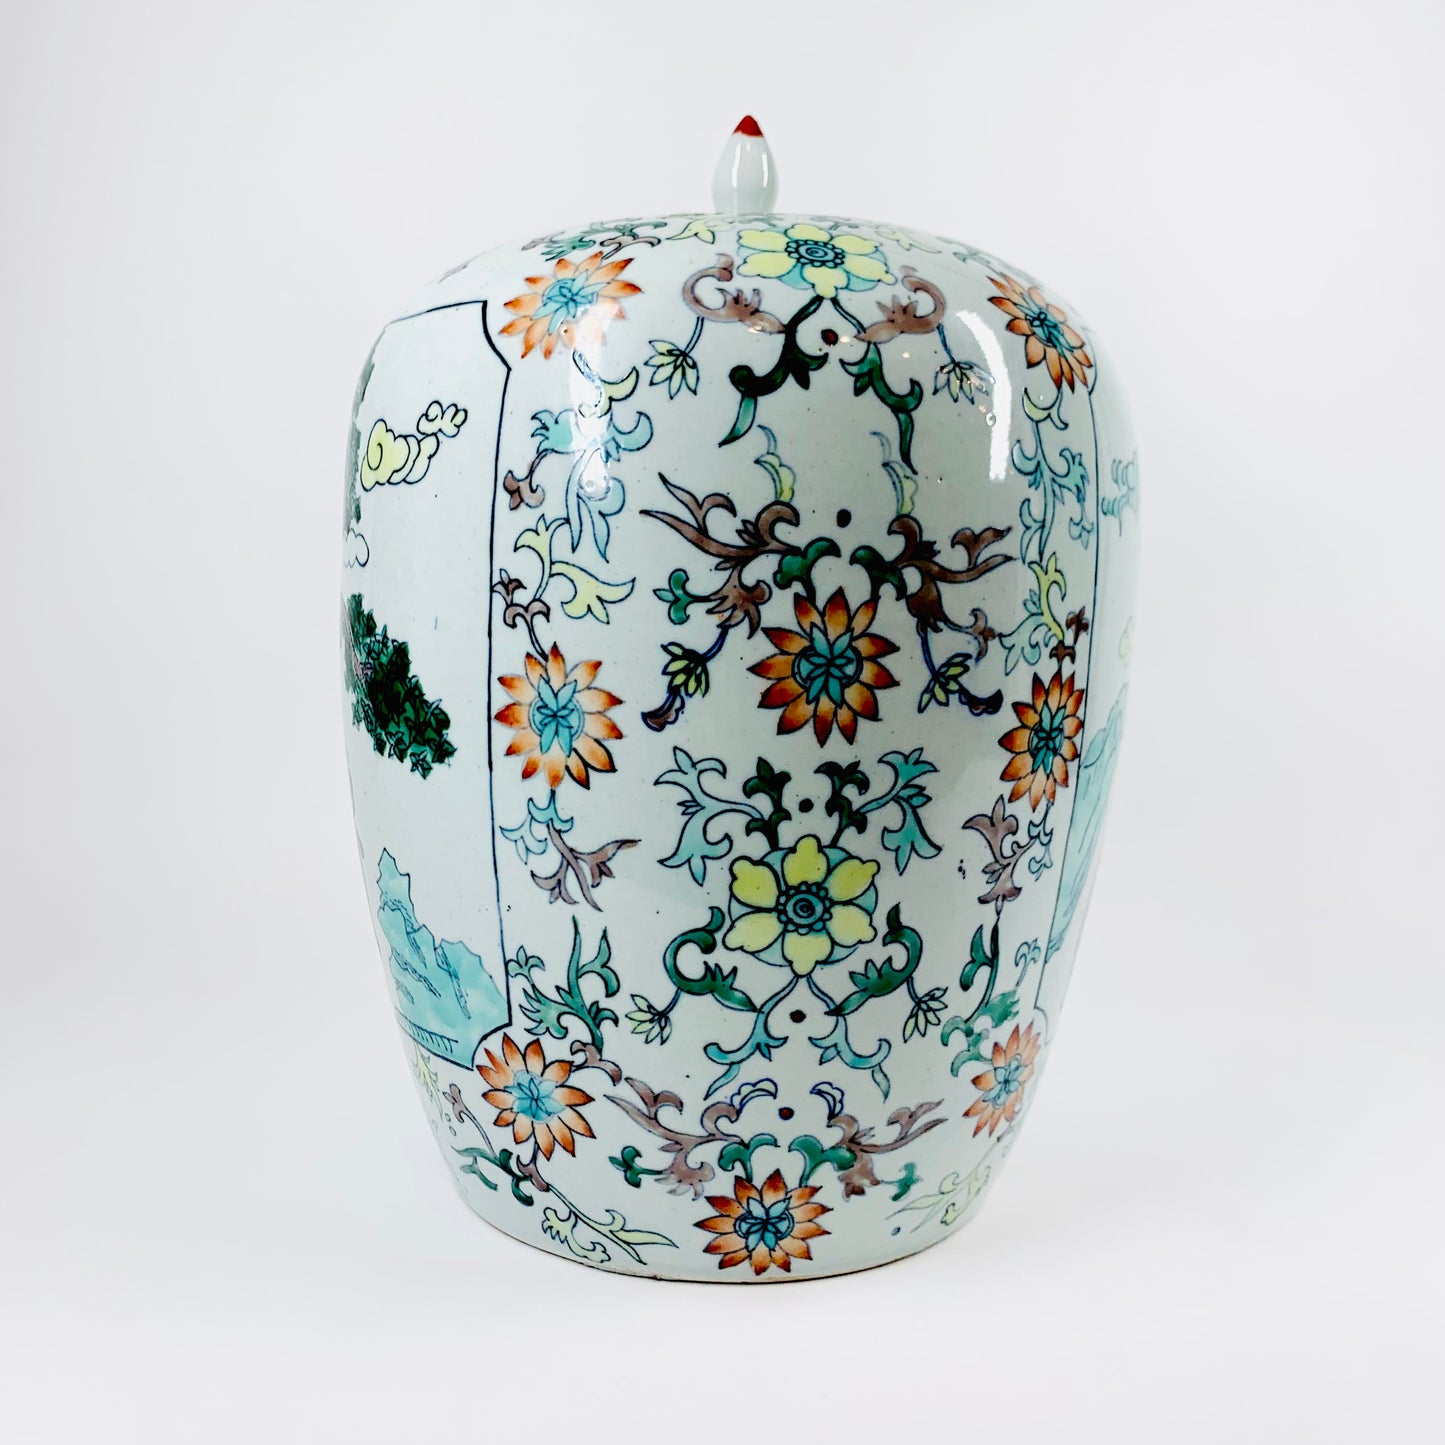 Large antique Chinese Famille Rose porcelain urn/ginger jar